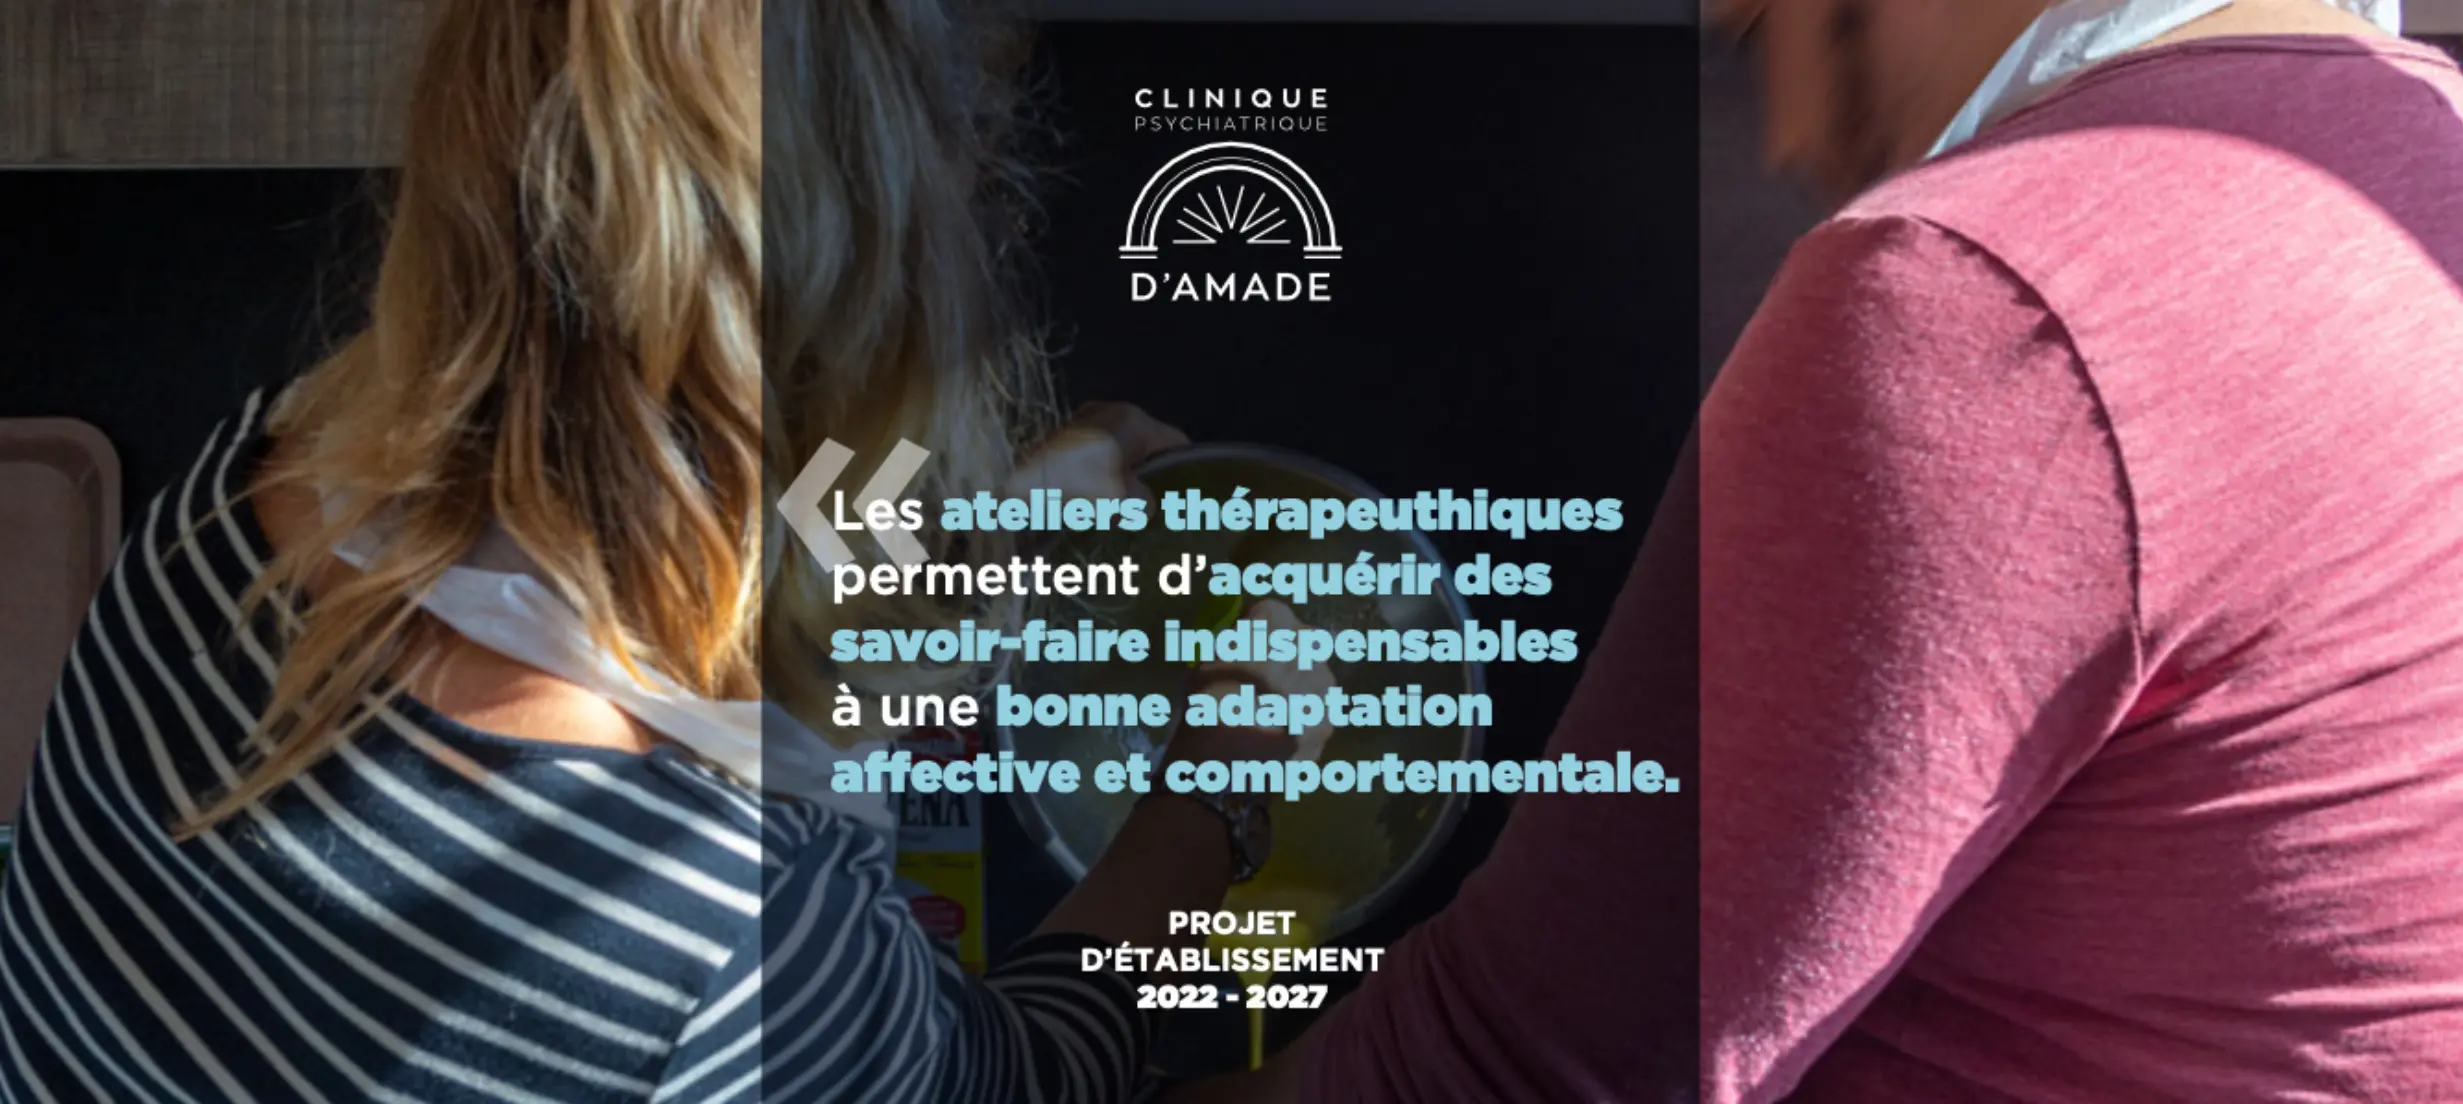 Informations sur les ateliers thérapeutiques de la Clinique d'Amade à Bayonne (64).